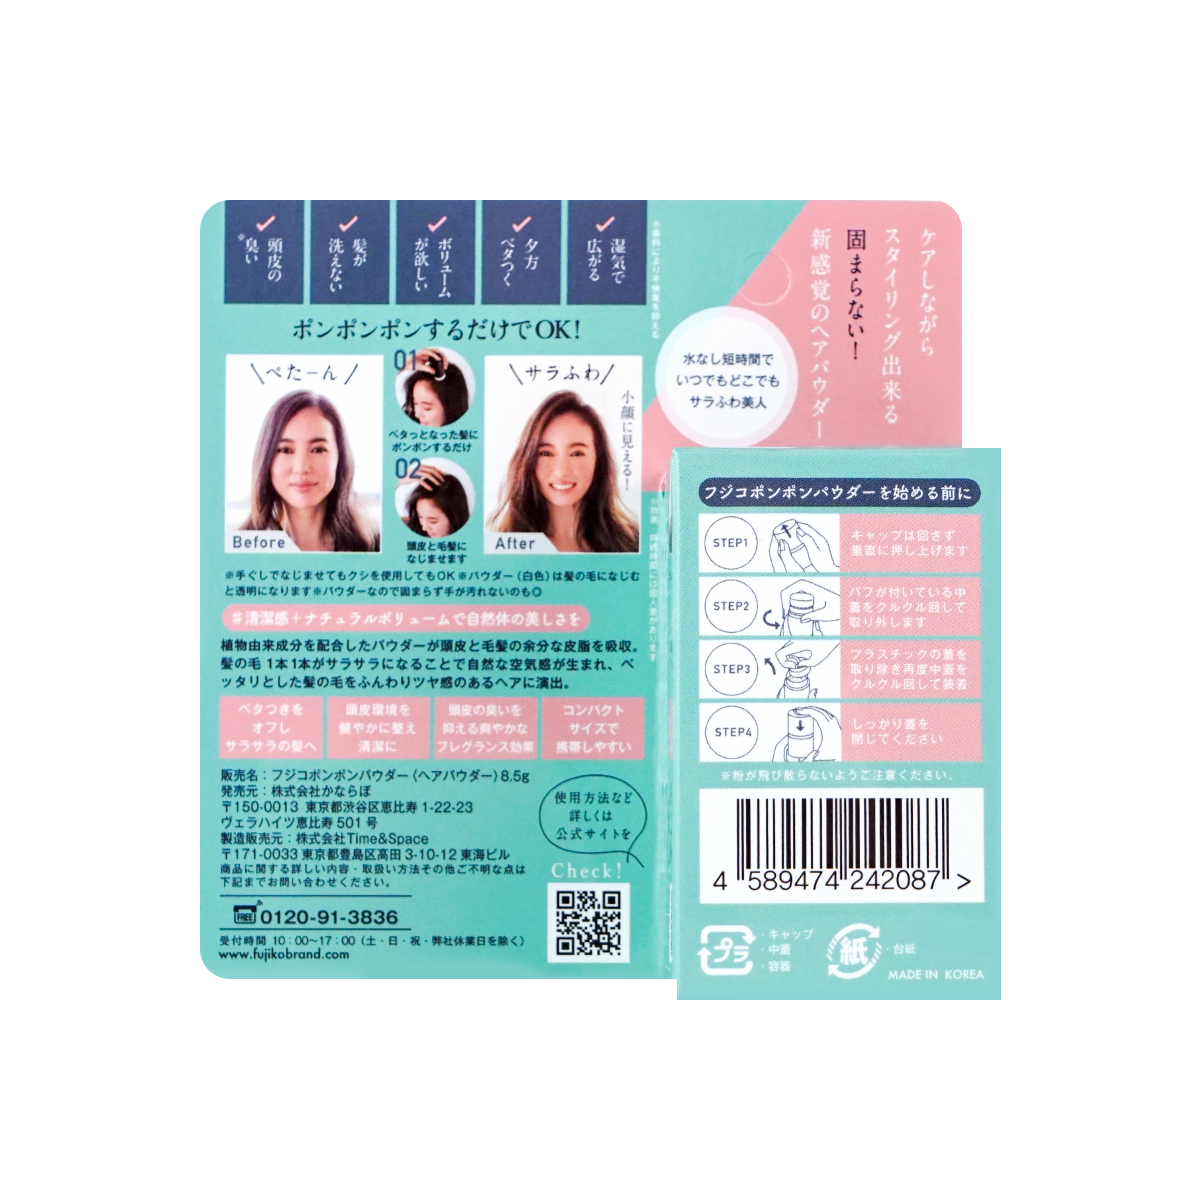 FUJIKO - Pon Pon Hair Powder Natural Volume 8.5g (RoseGold Limited Edition)